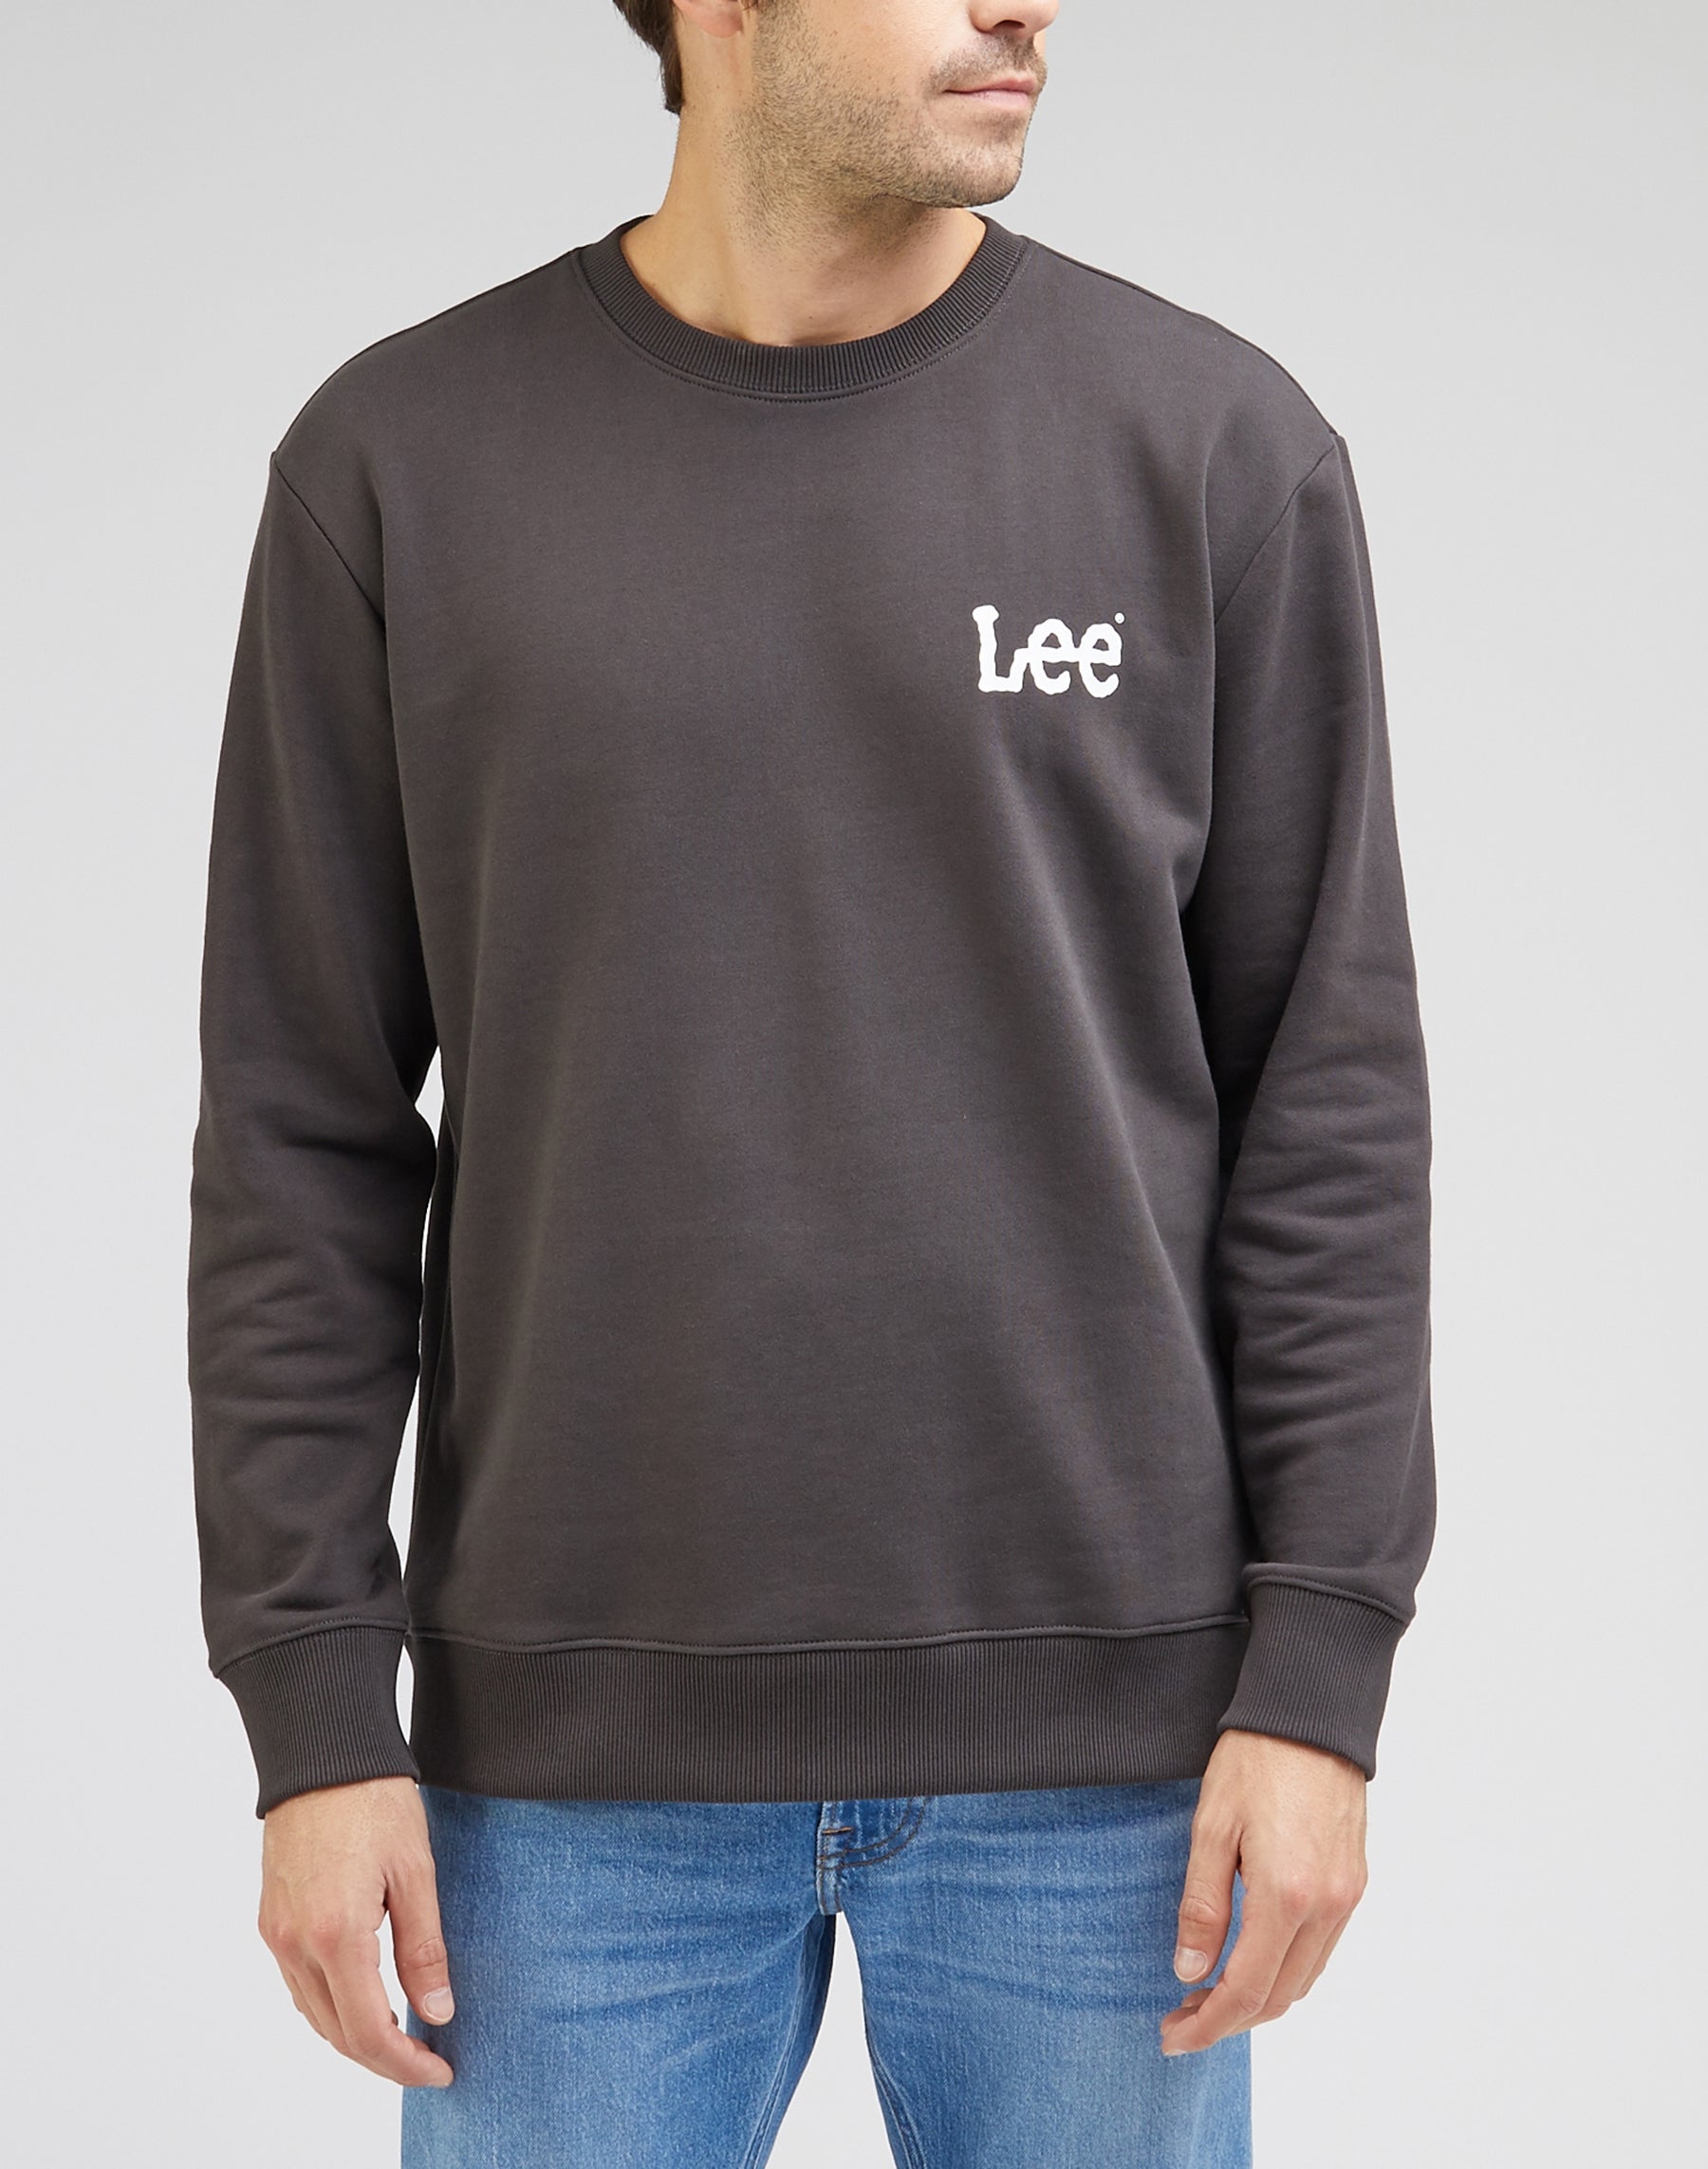 Wobbly Lee Sweatshirt in Washed Black Sweatshirts Lee   